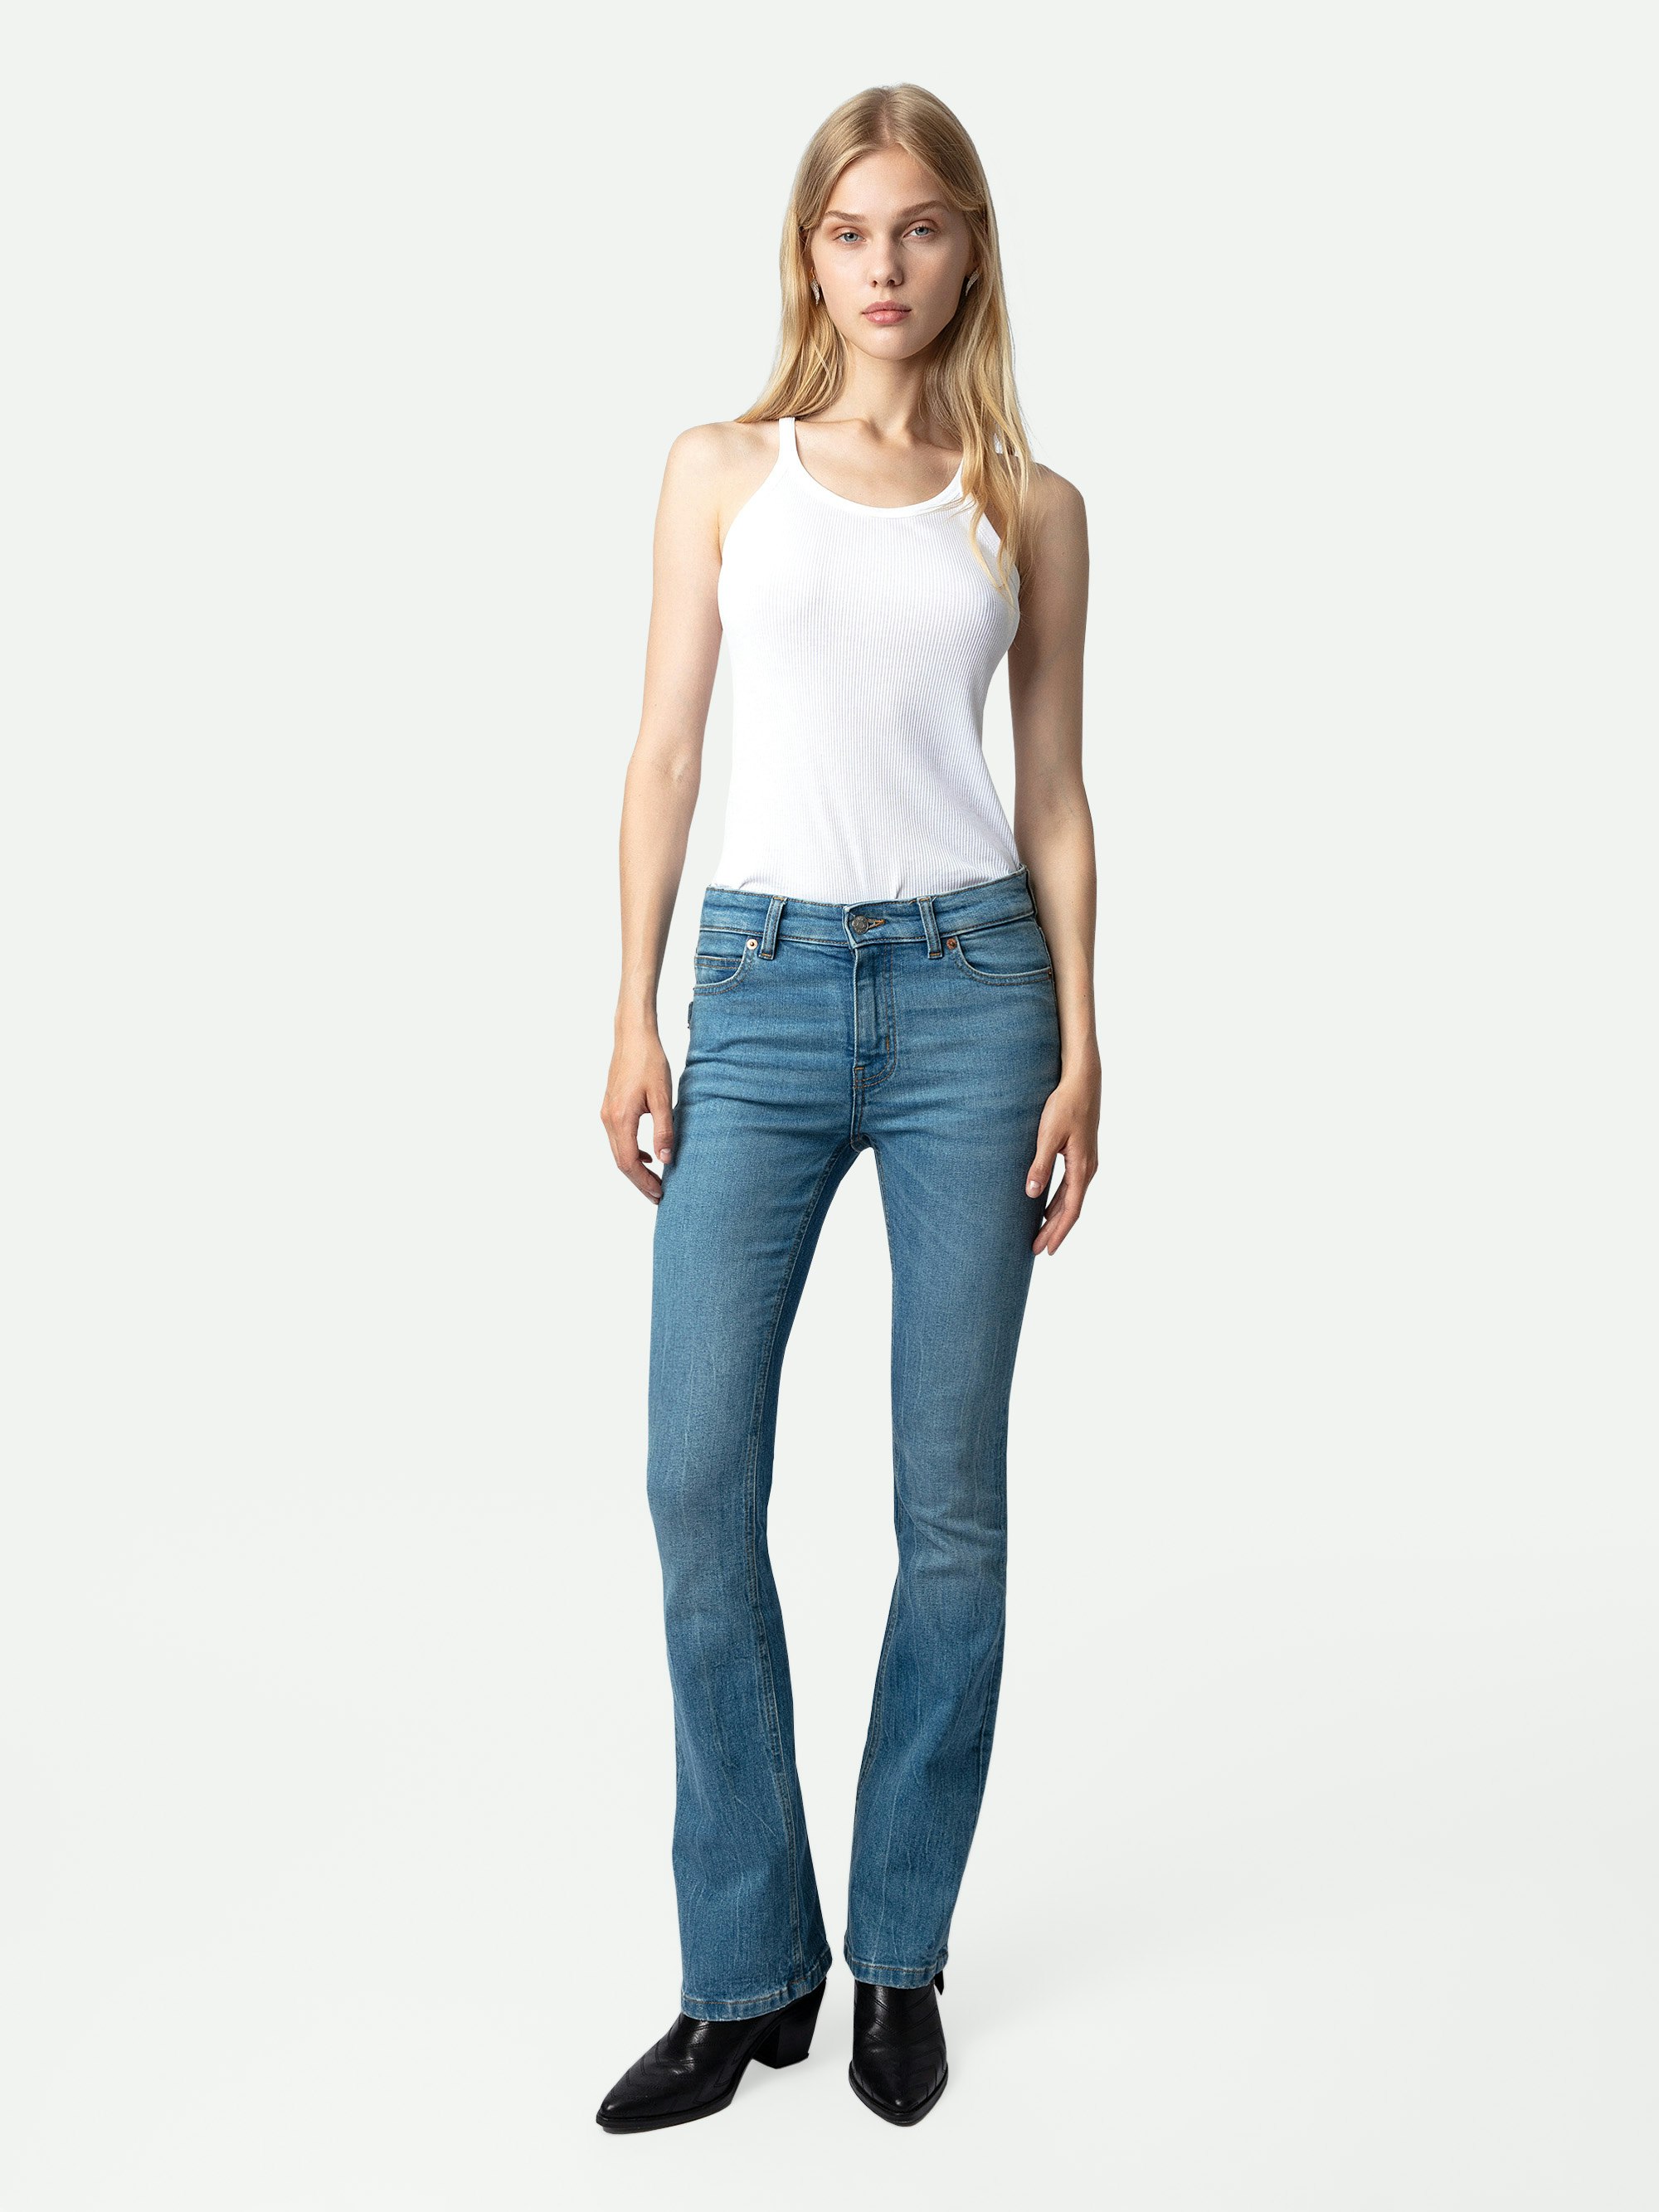 Jeans Eclipse - Jeans blu svasati donna.